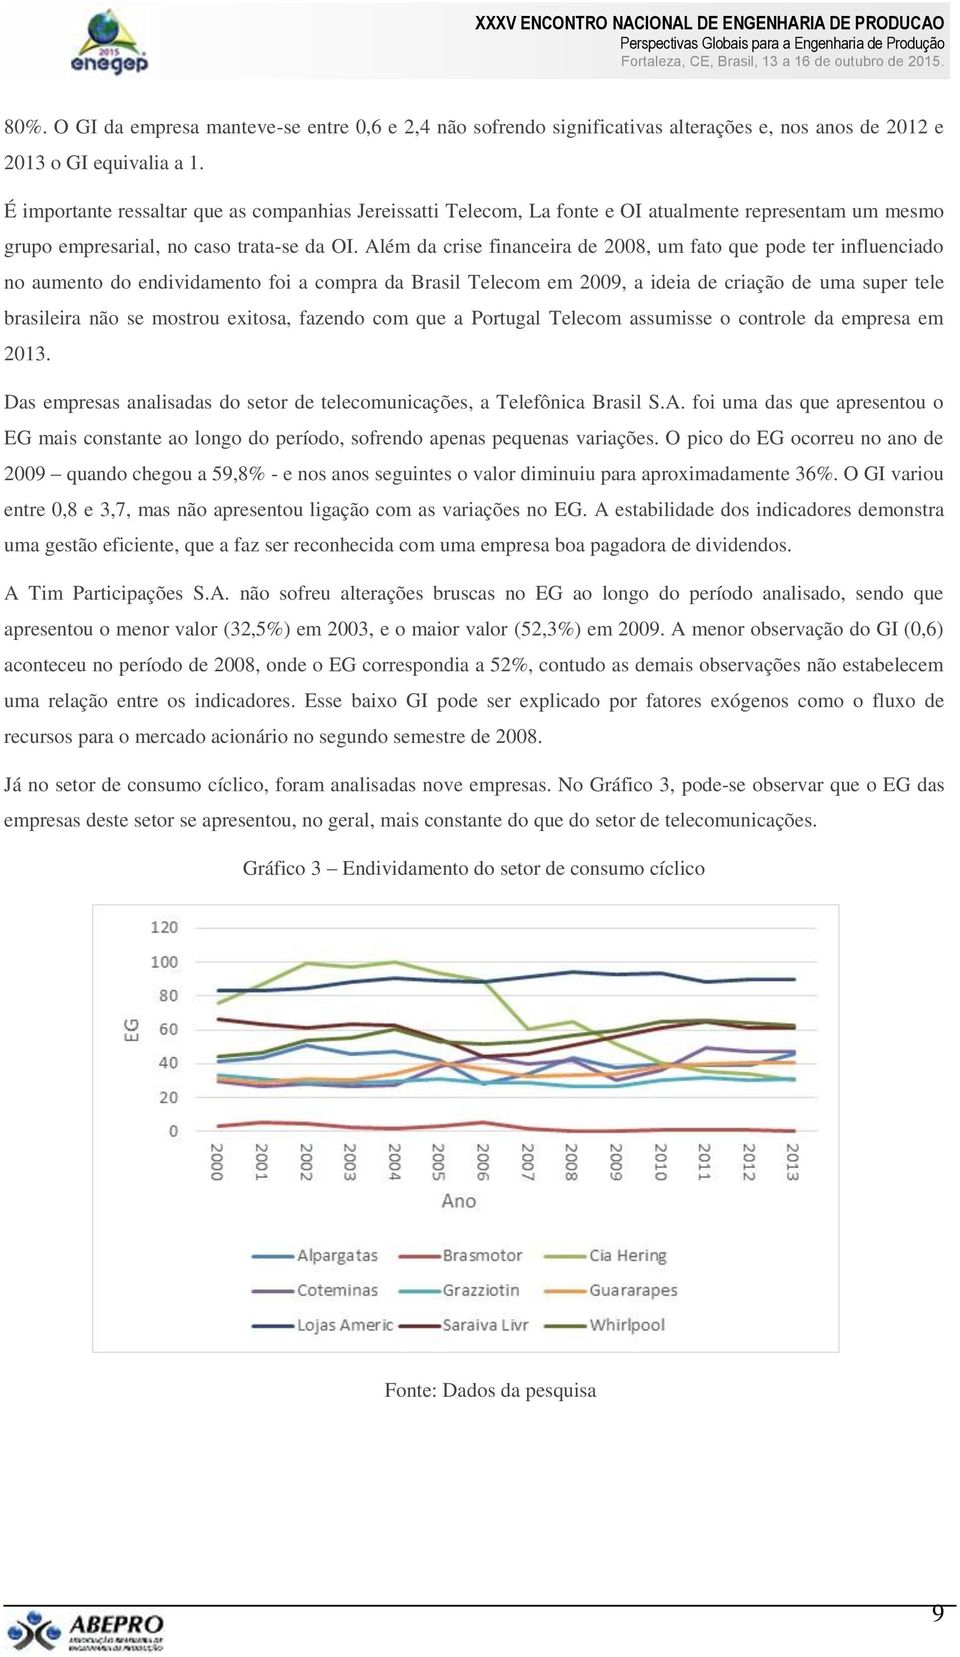 Além da crise financeira de 2008, um fato que pode ter influenciado no aumento do endividamento foi a compra da Brasil Telecom em 2009, a ideia de criação de uma super tele brasileira não se mostrou